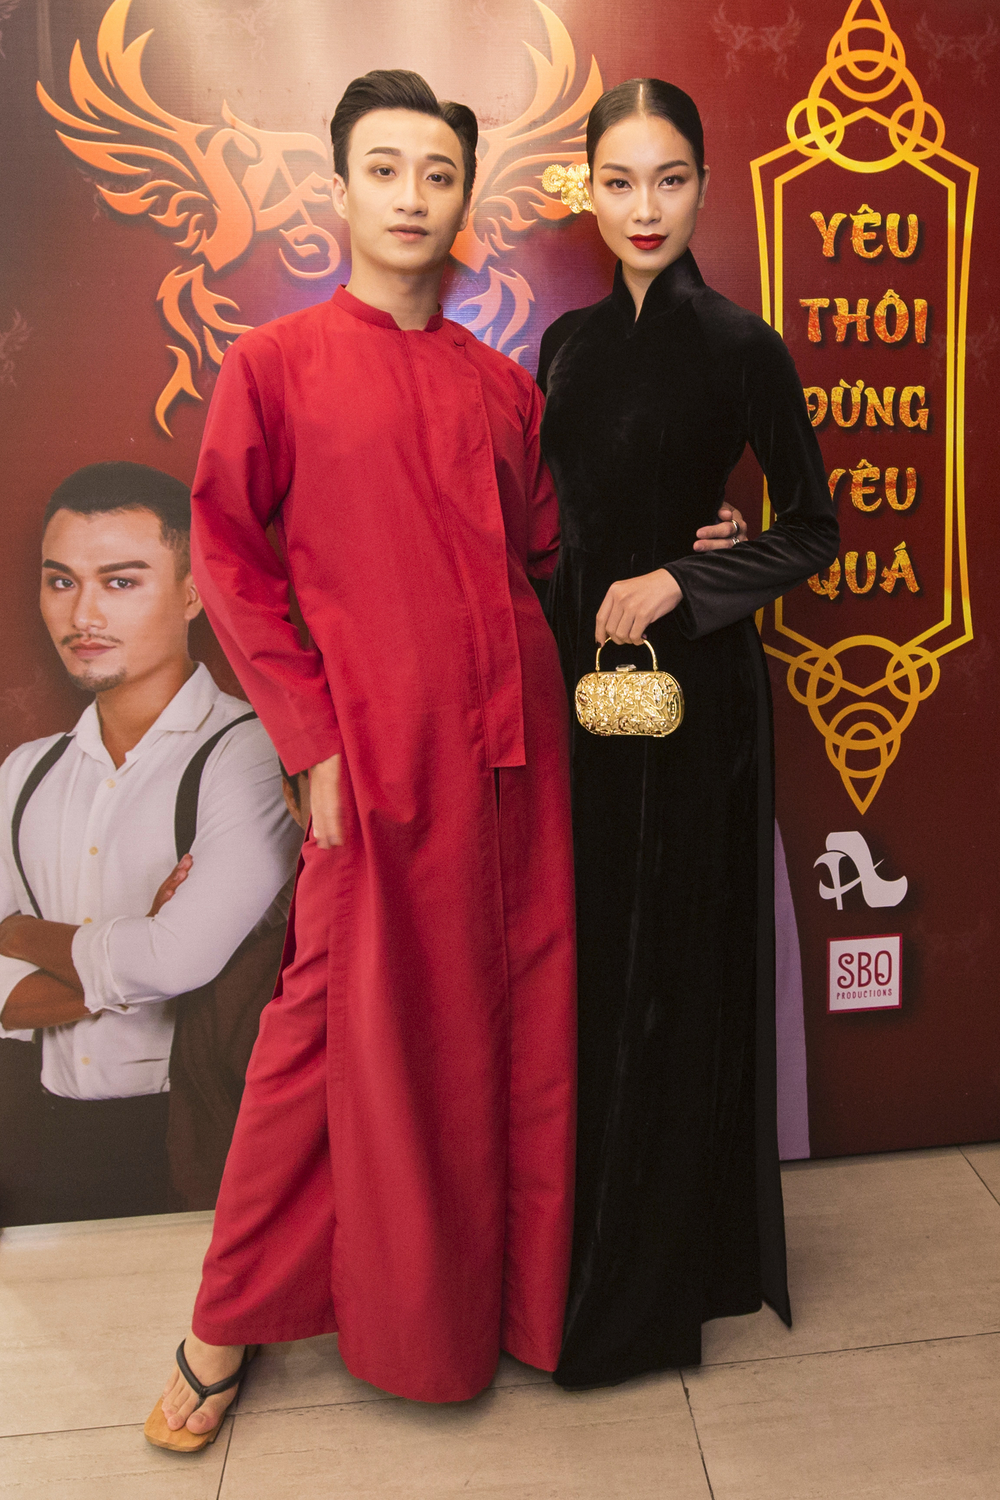 
Anh và Á hậu Thuỳ Dung là 2 nhân vật chính của phim ngắn âm nhạc lần này.